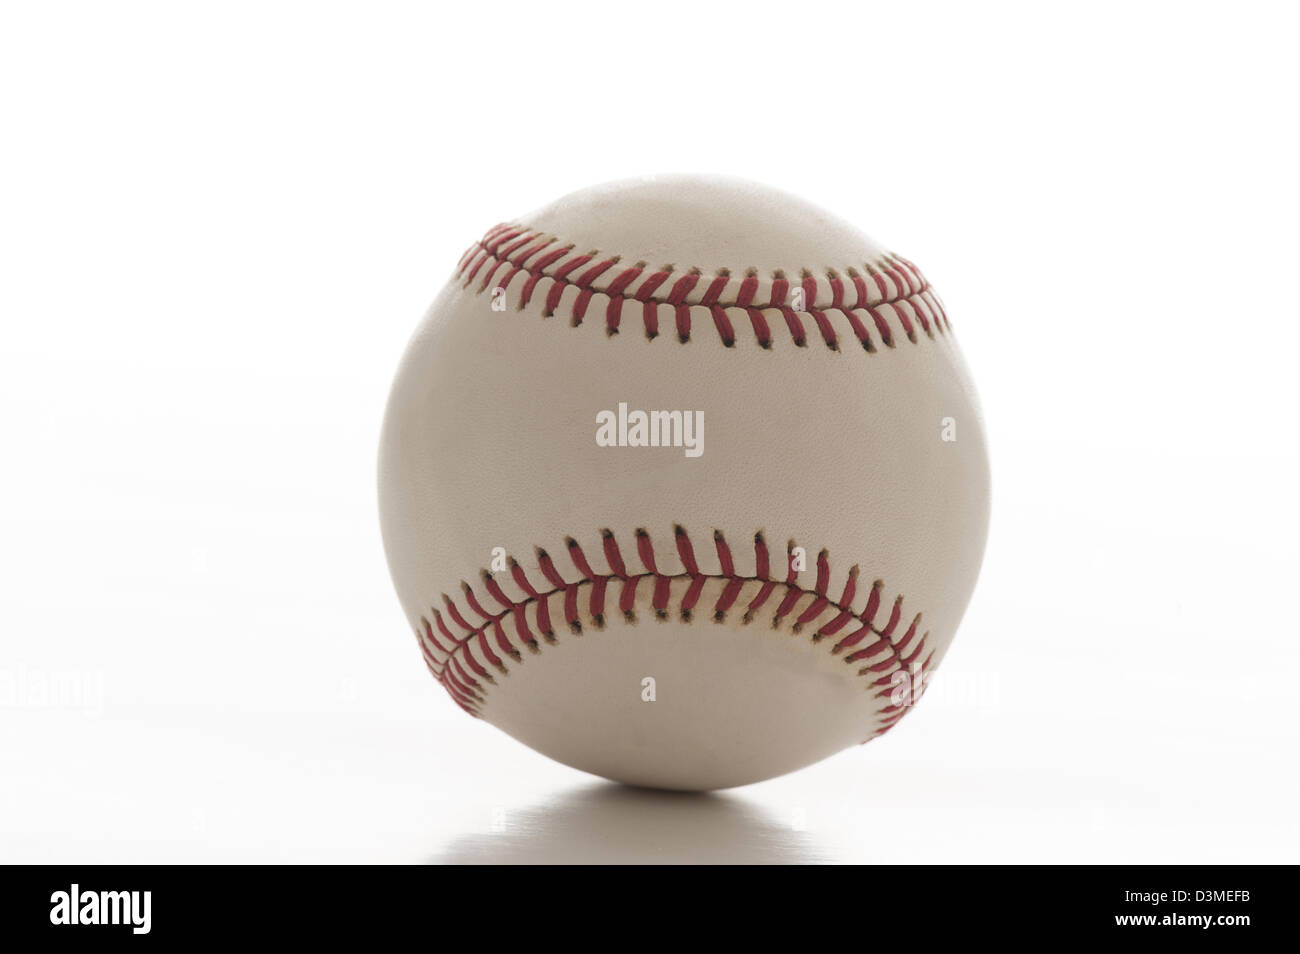 baseball closeup on white background cutout Stock Photo